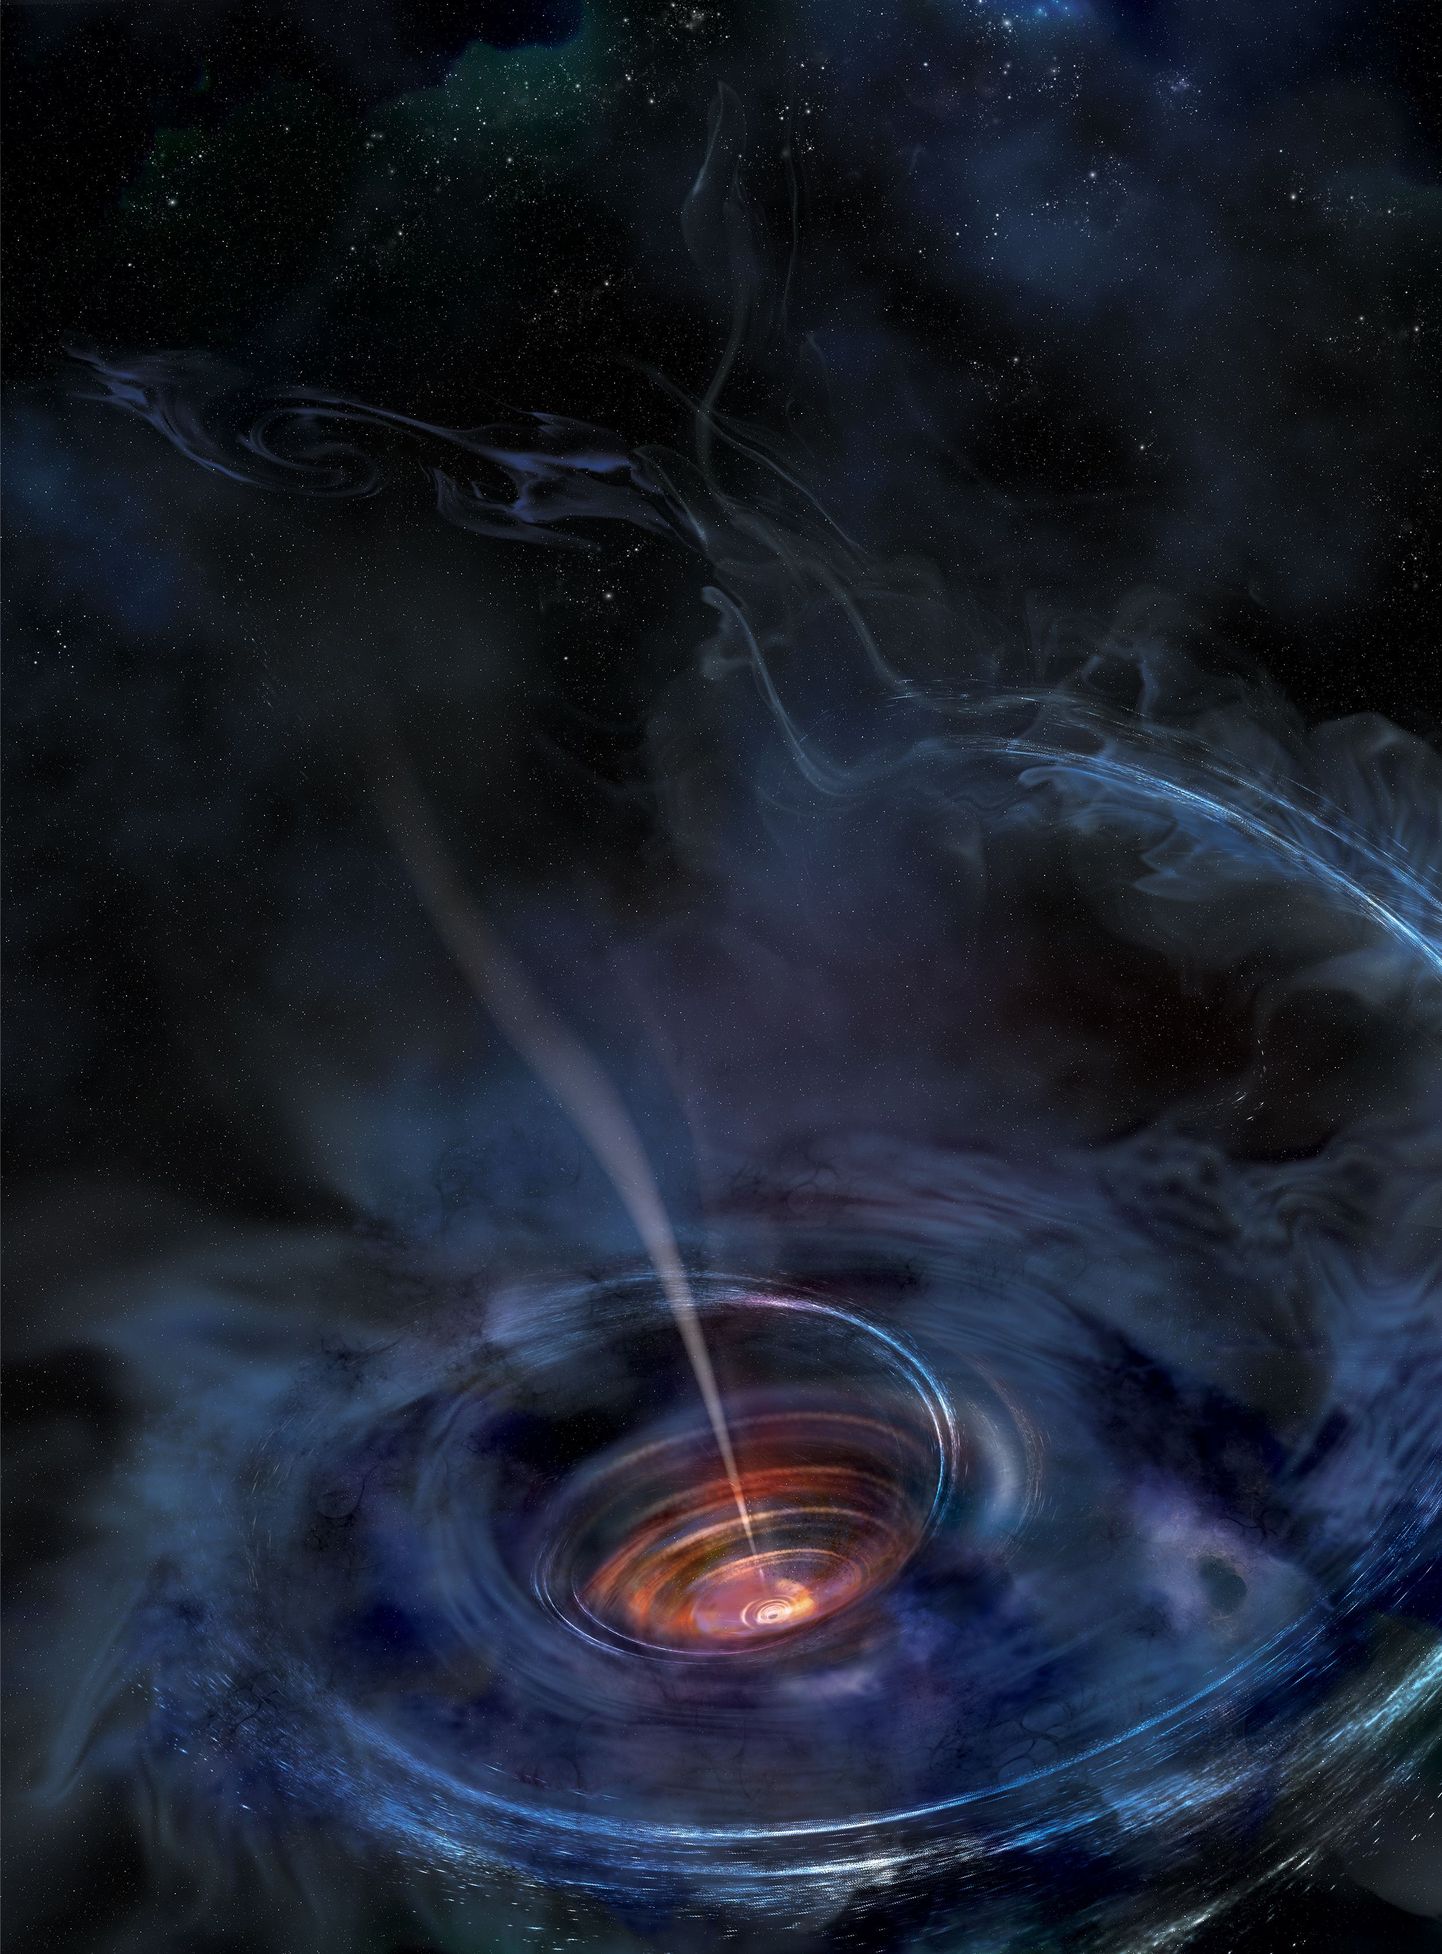 NASA teadlased on tabasid kosmilisest röntgenkiirgusest esmakordselt jälje musta augu poolt alla neelatavast tähest.